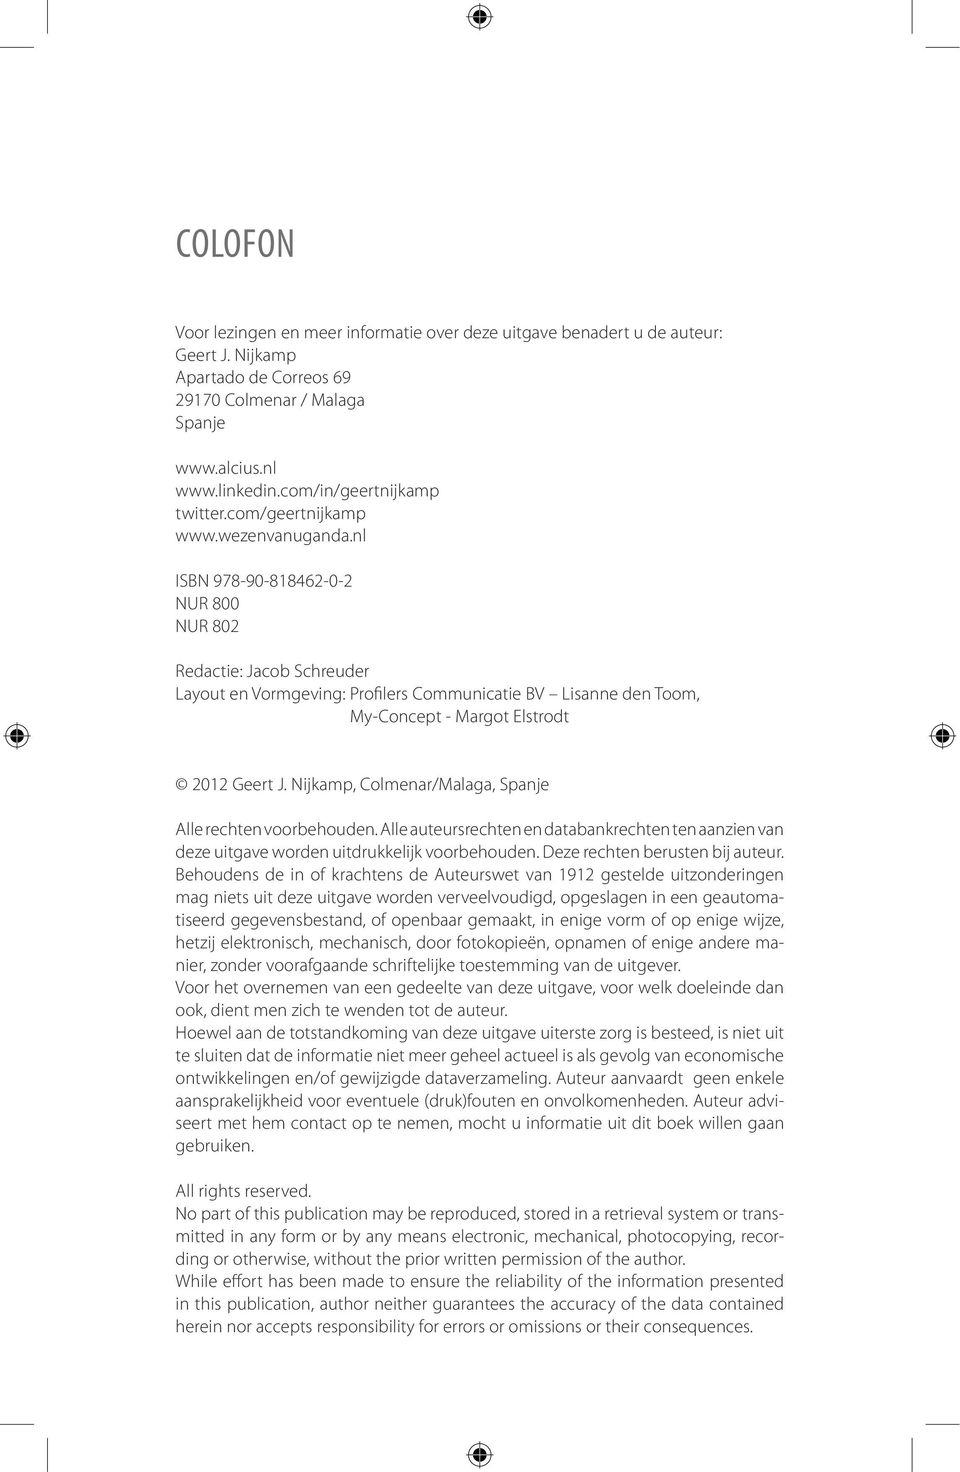 nl ISBN 978-90-818462-0-2 NUR 800 NUR 802 Redactie: Jacob Schreuder Layout en Vormgeving: Profilers Communicatie BV Lisanne den Toom, My-Concept - Margot Elstrodt 2012 Geert J.